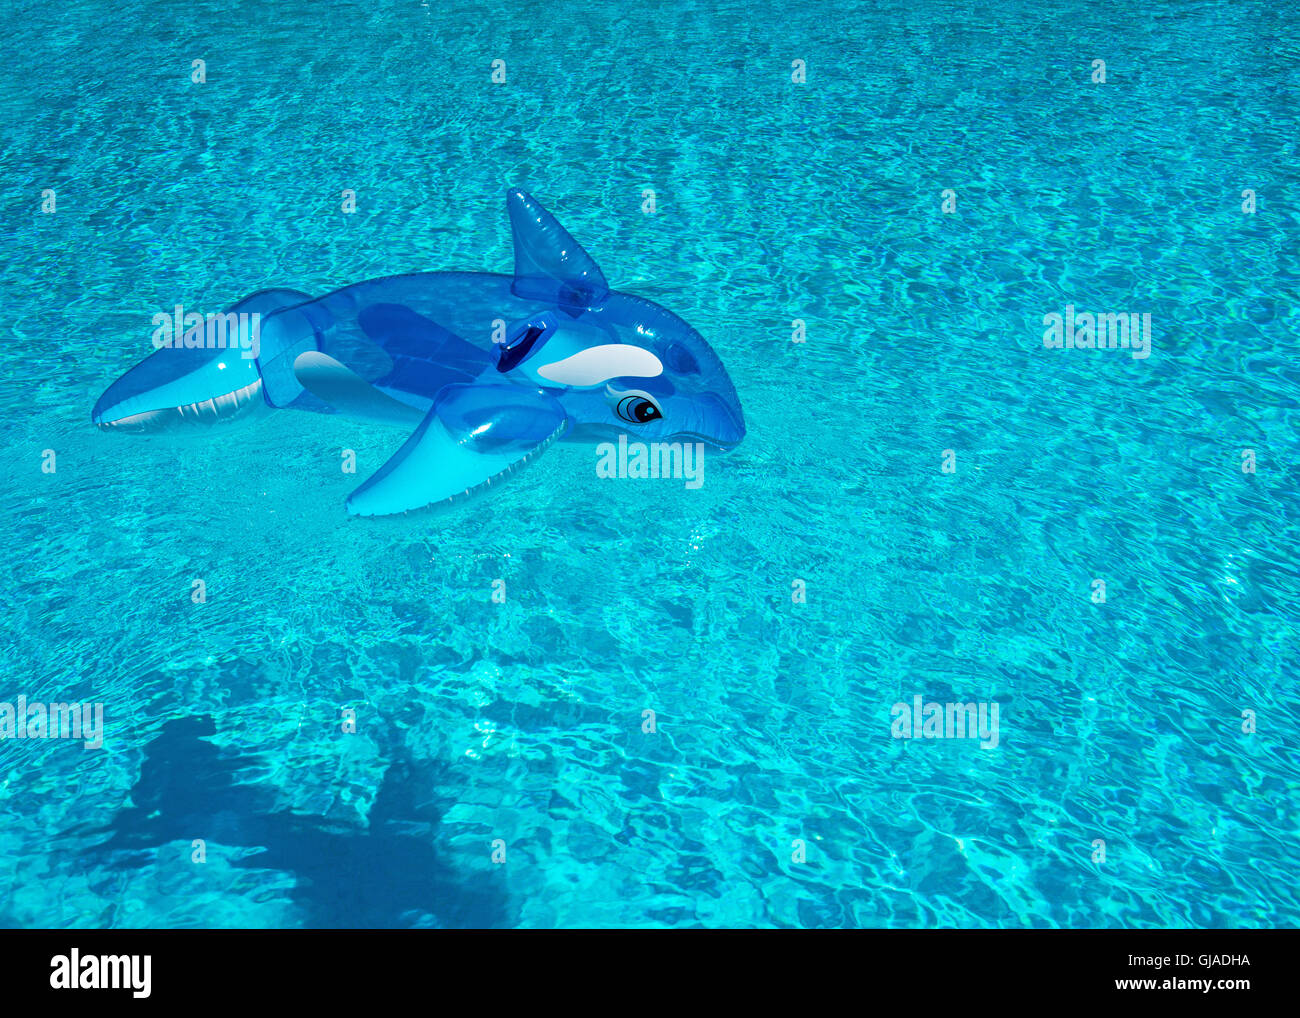 Un dauphin gonflable toy shot par le haut dans une piscine profonde, prix pour le texte ou copiez espacés Banque D'Images